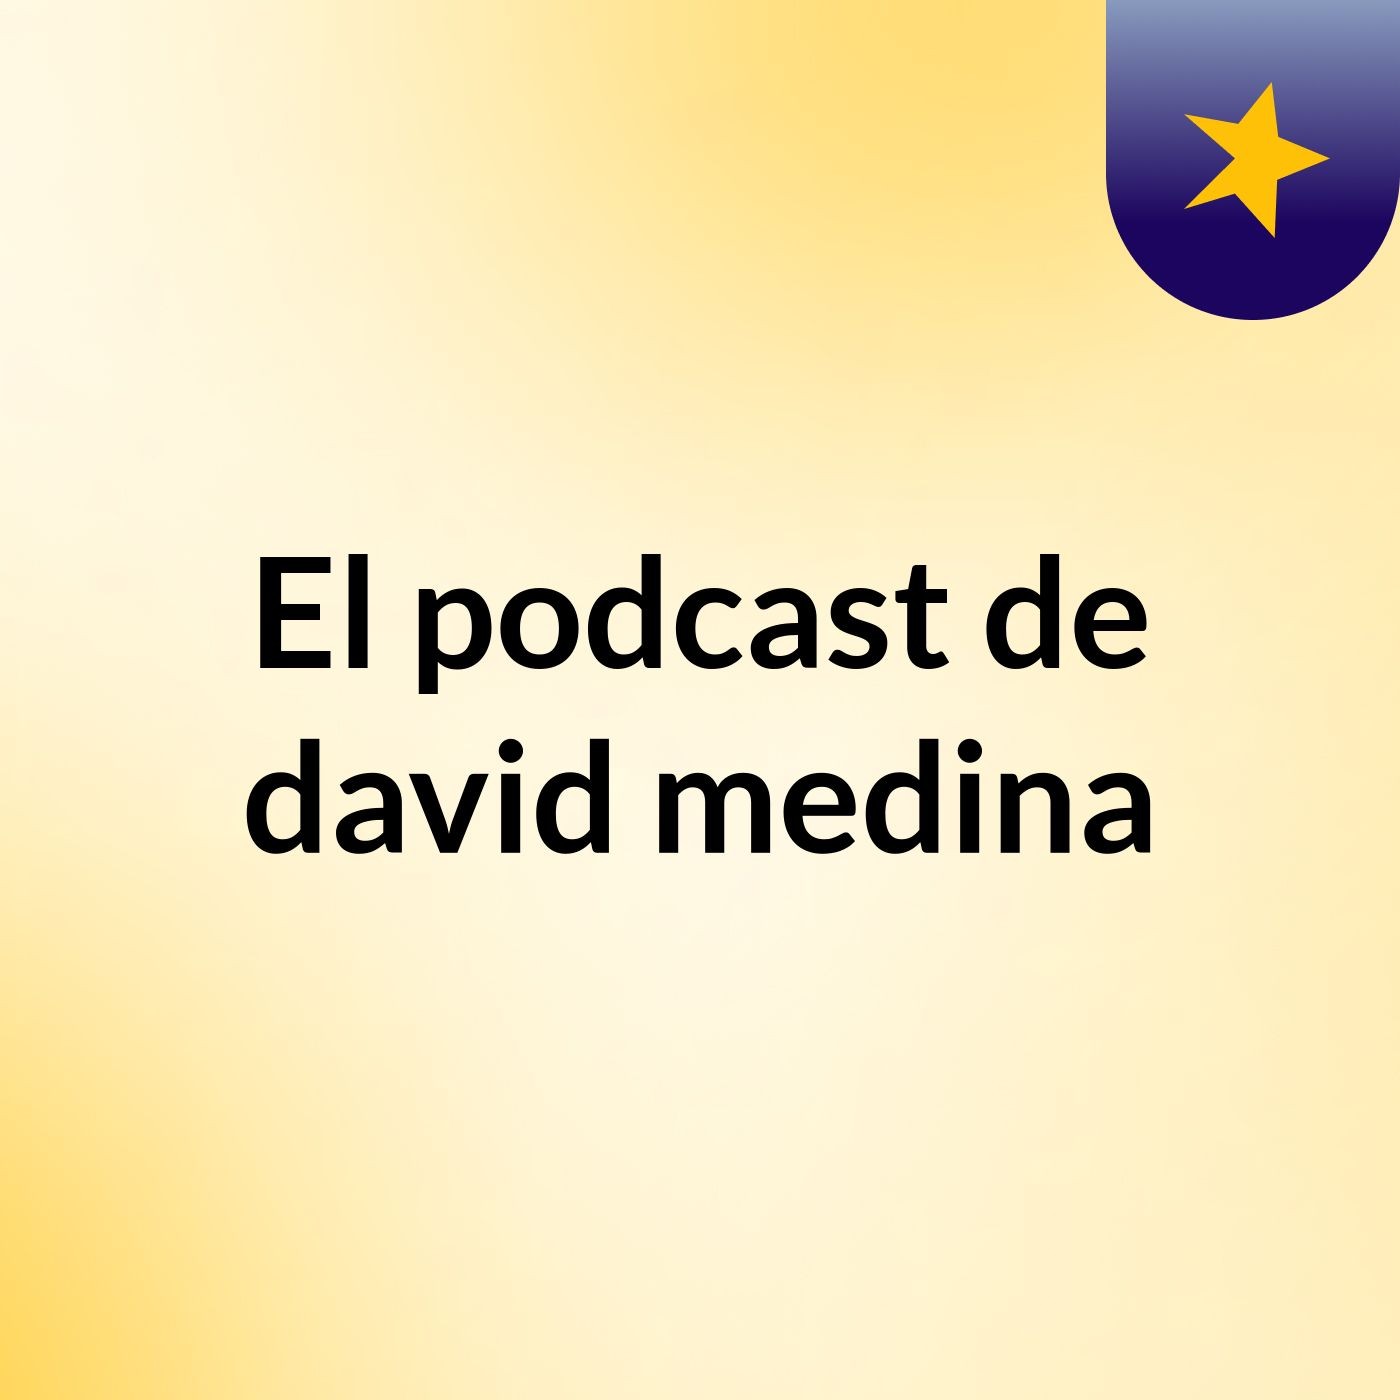 El podcast de david medina